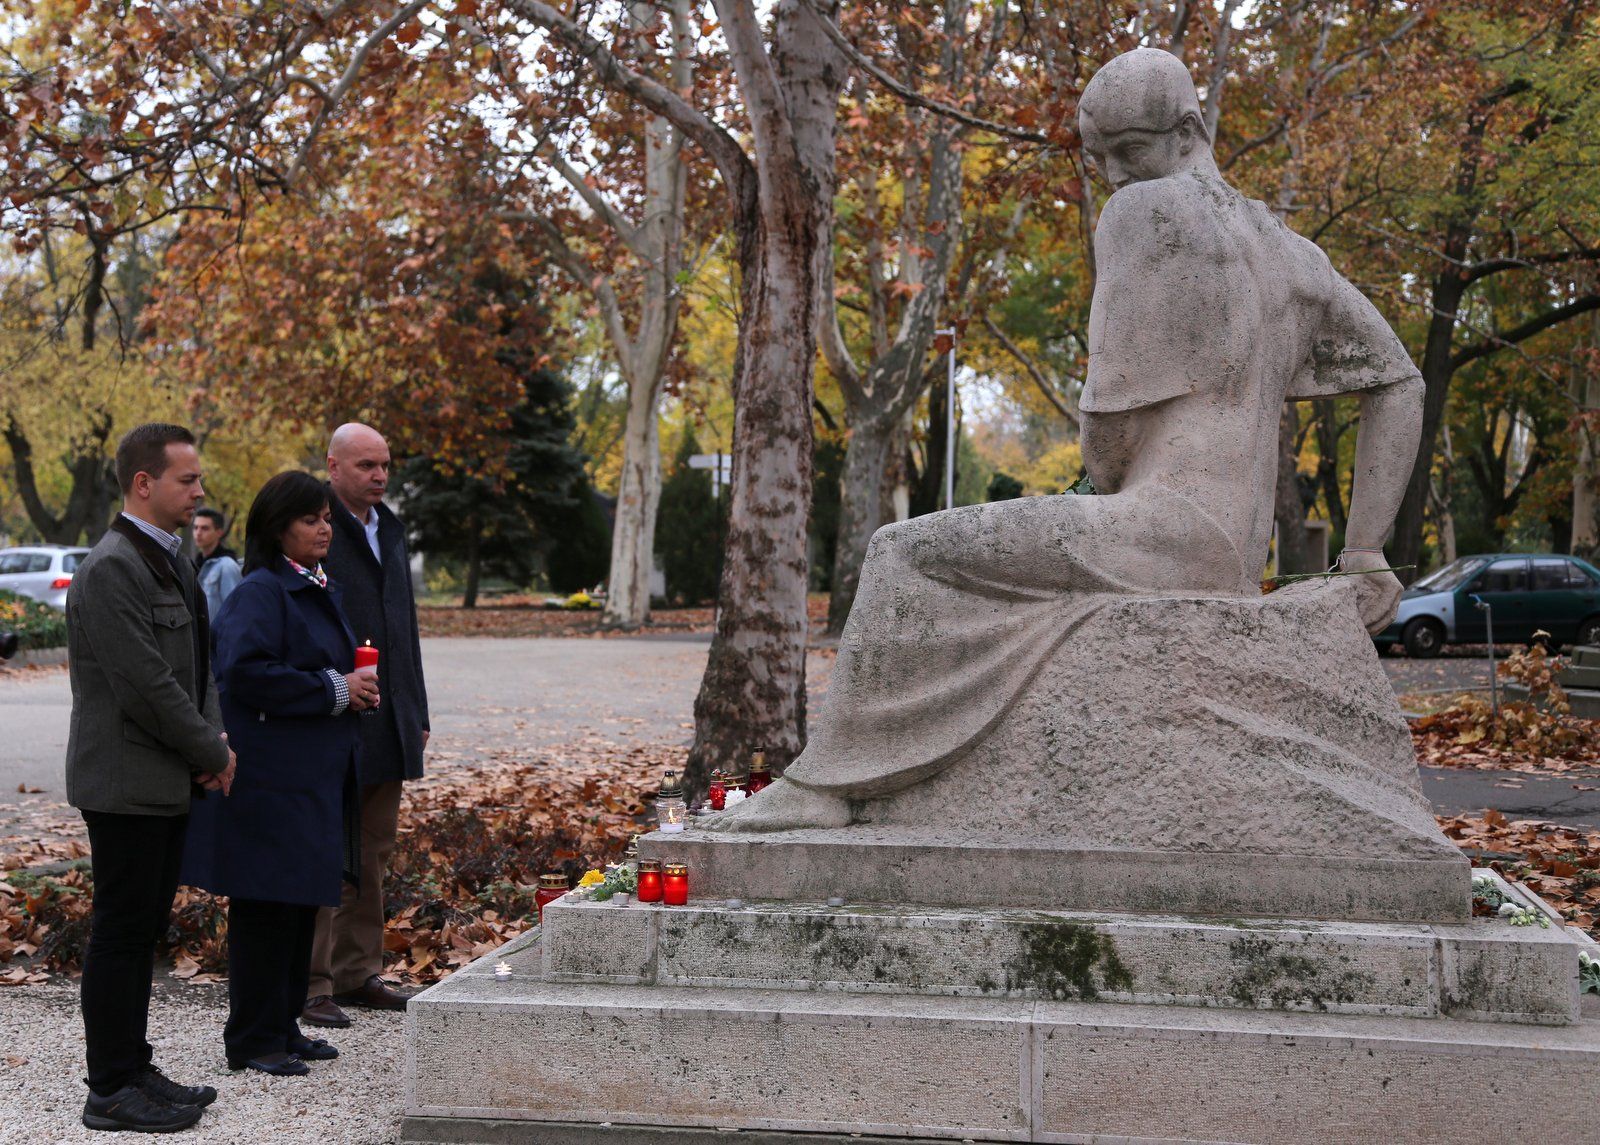 Gyertyák gyúltak a Nemzeti sírkert nagyjainak emlékére